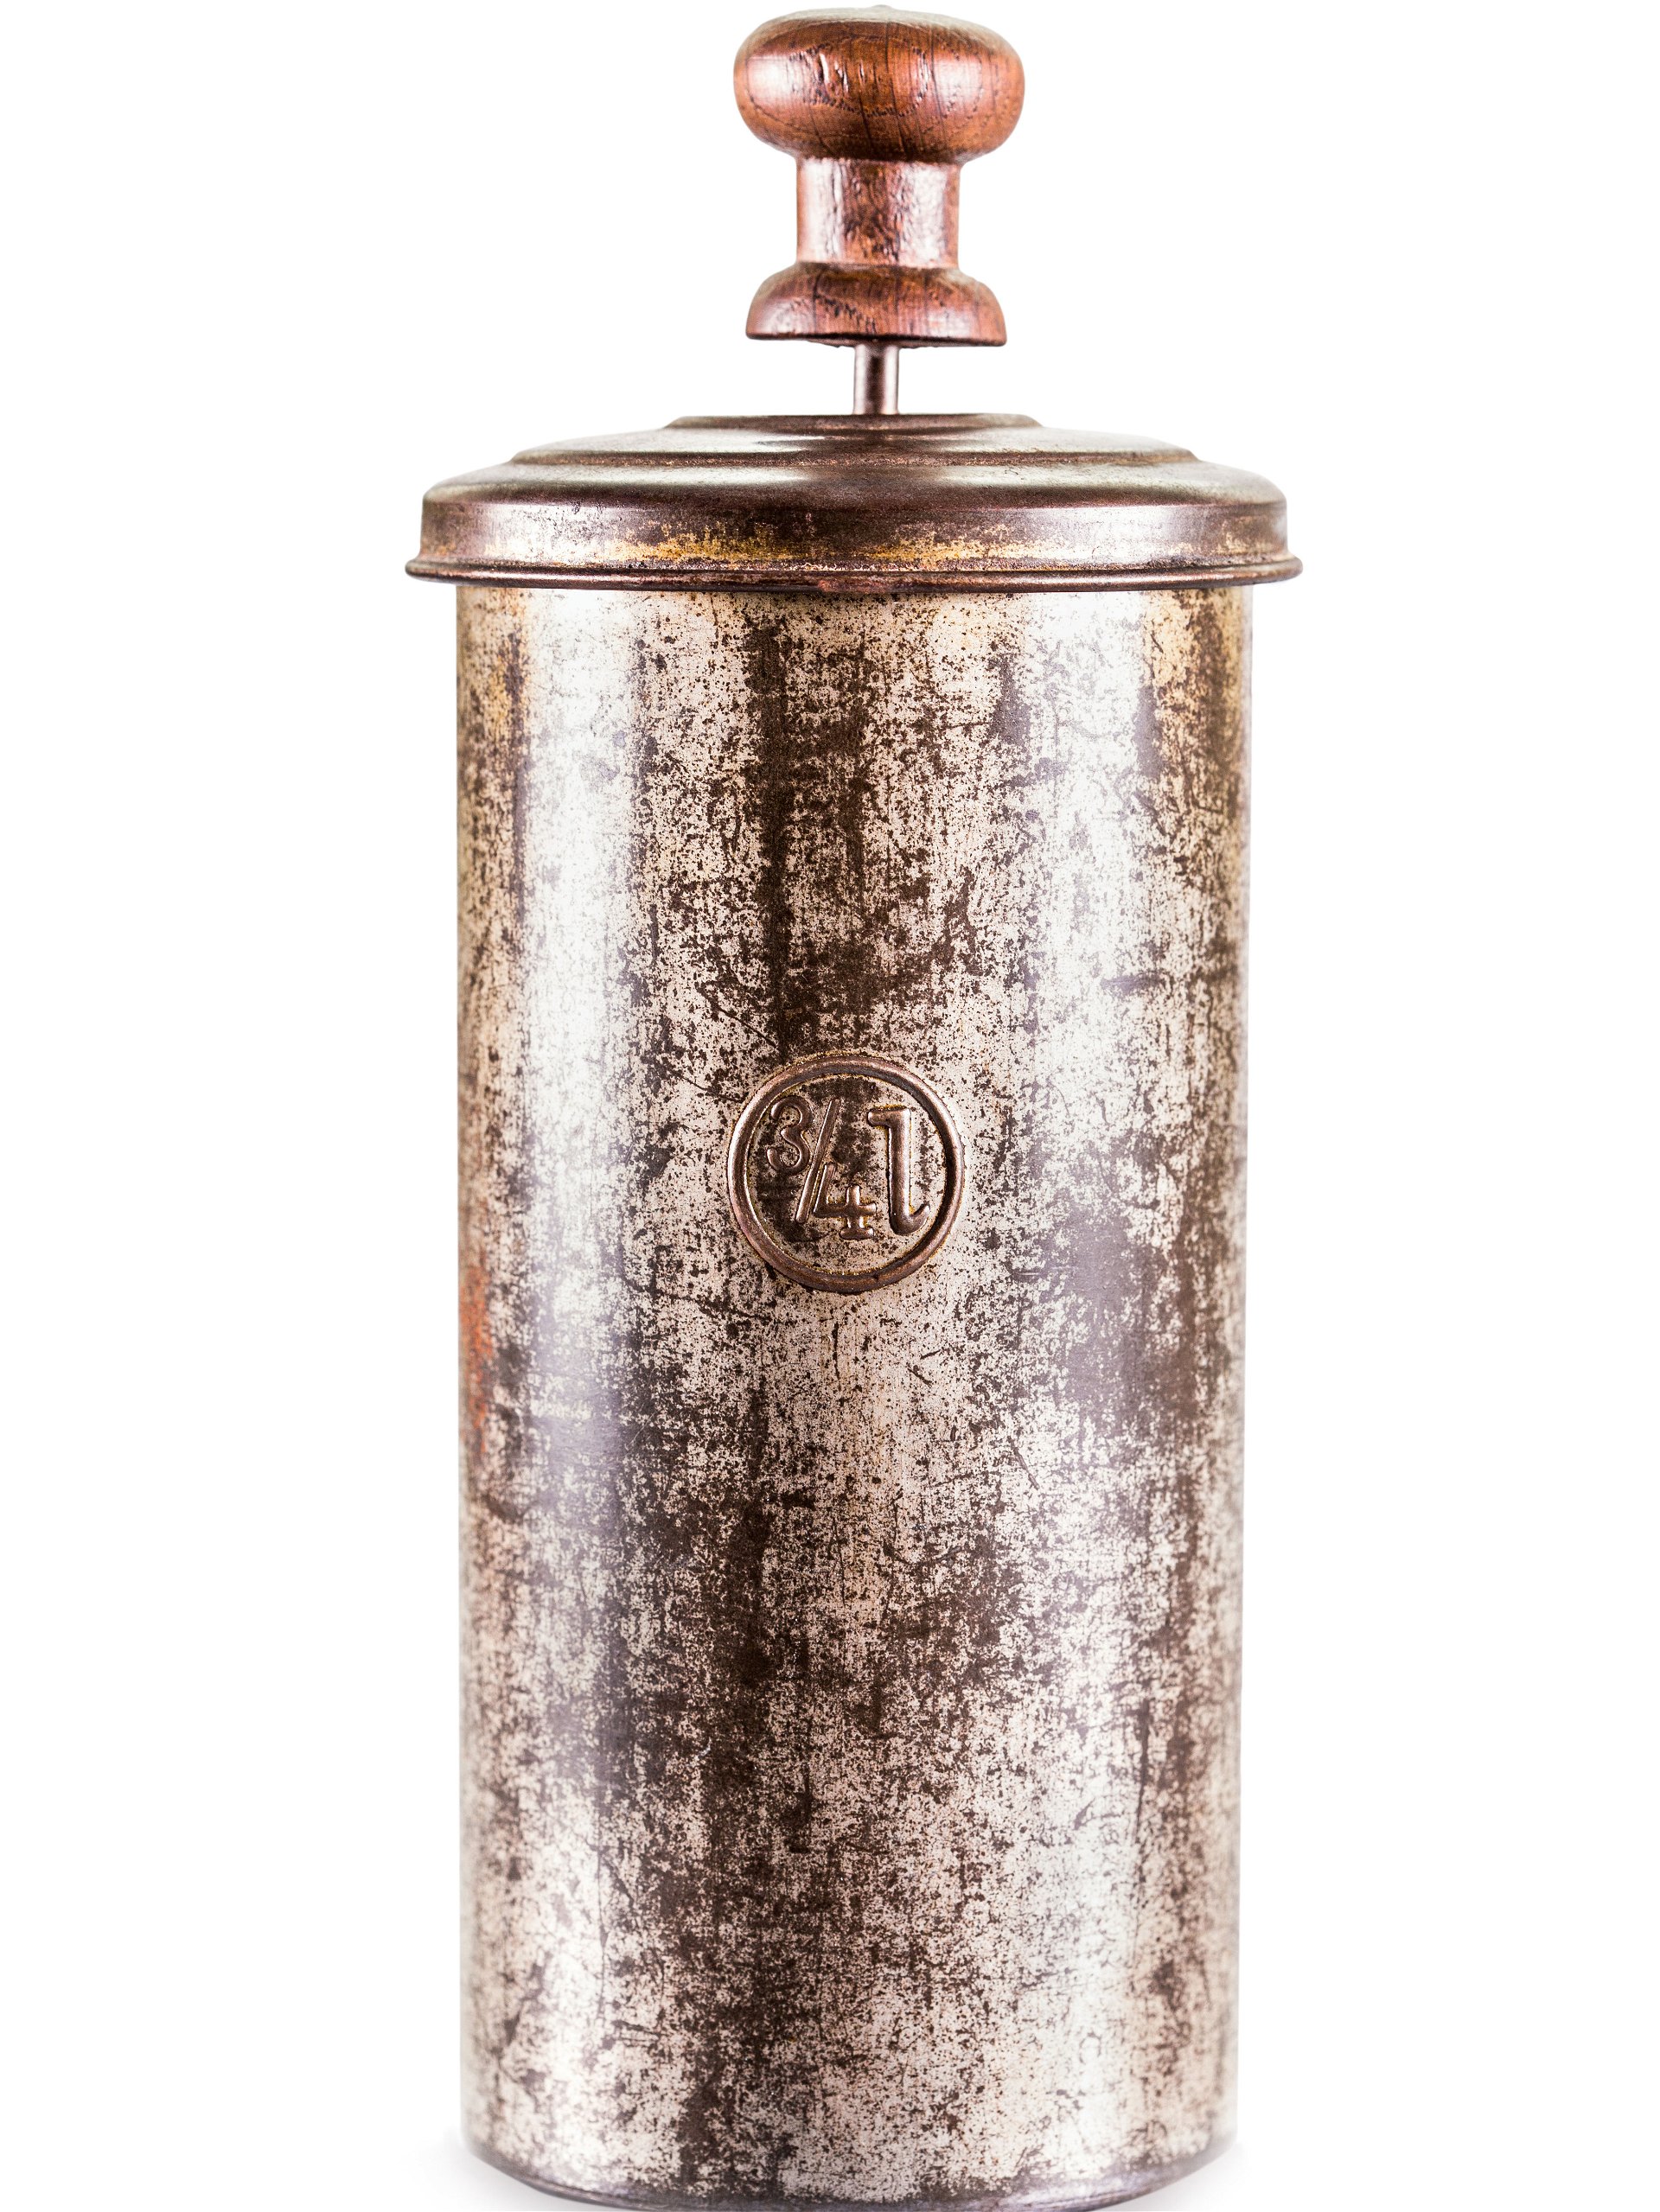 1929: 77 Jahre später ließ der Italiener Attilio Calimani die heute bekannte Version der French Press patentieren und landete damit einen Volltreffer. Da sich die simple Kaffeemaschine größter Beliebtheit erfreute, ließ auch ein attraktives Design nicht lange auf sich warten.